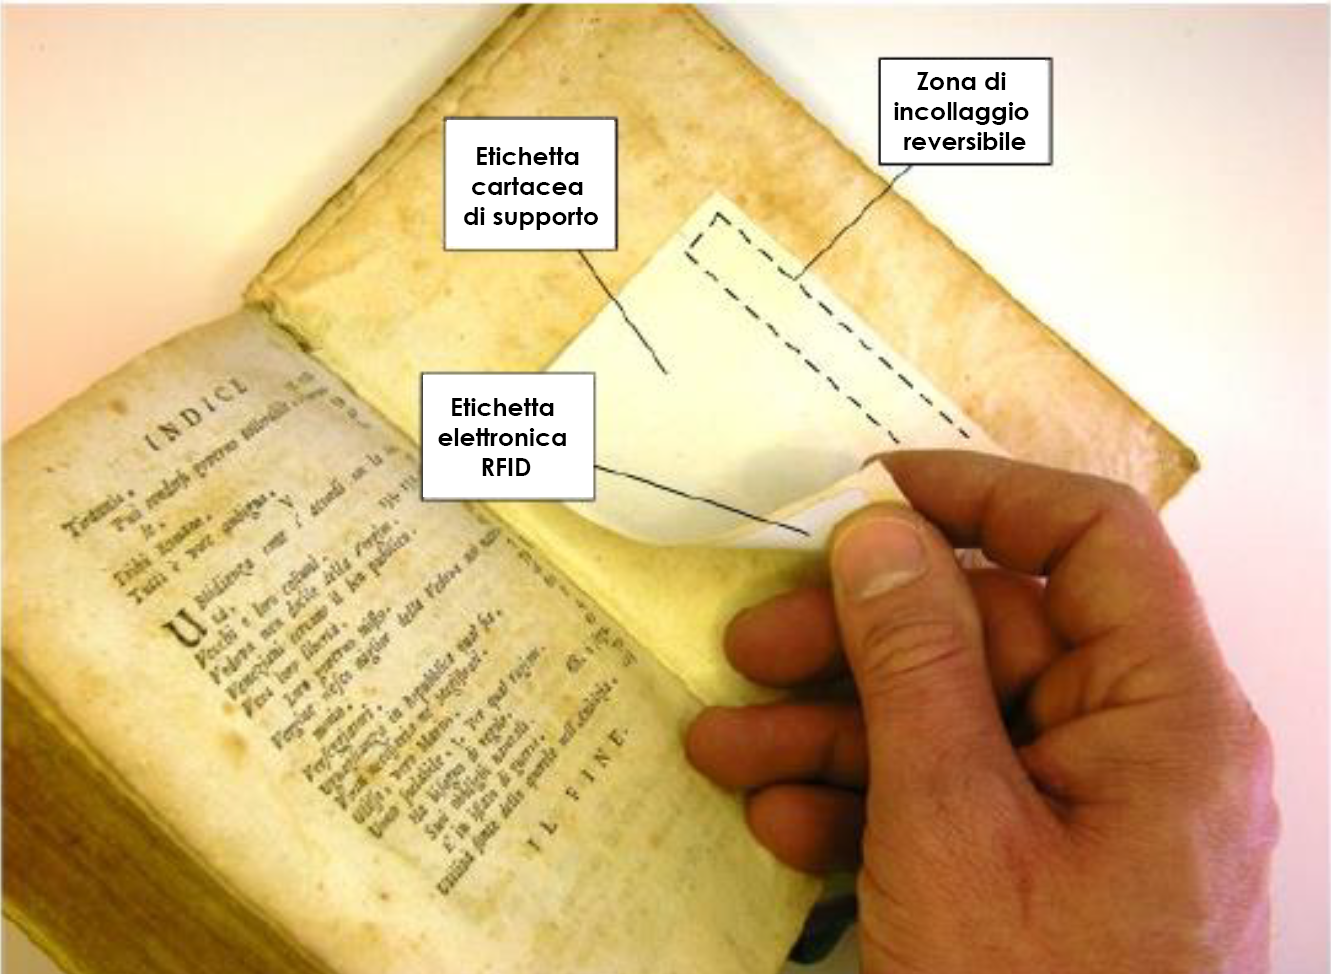 Una mano rimuove etichette rfid per libri antichi da un volume datato e ingiallito col tempo.